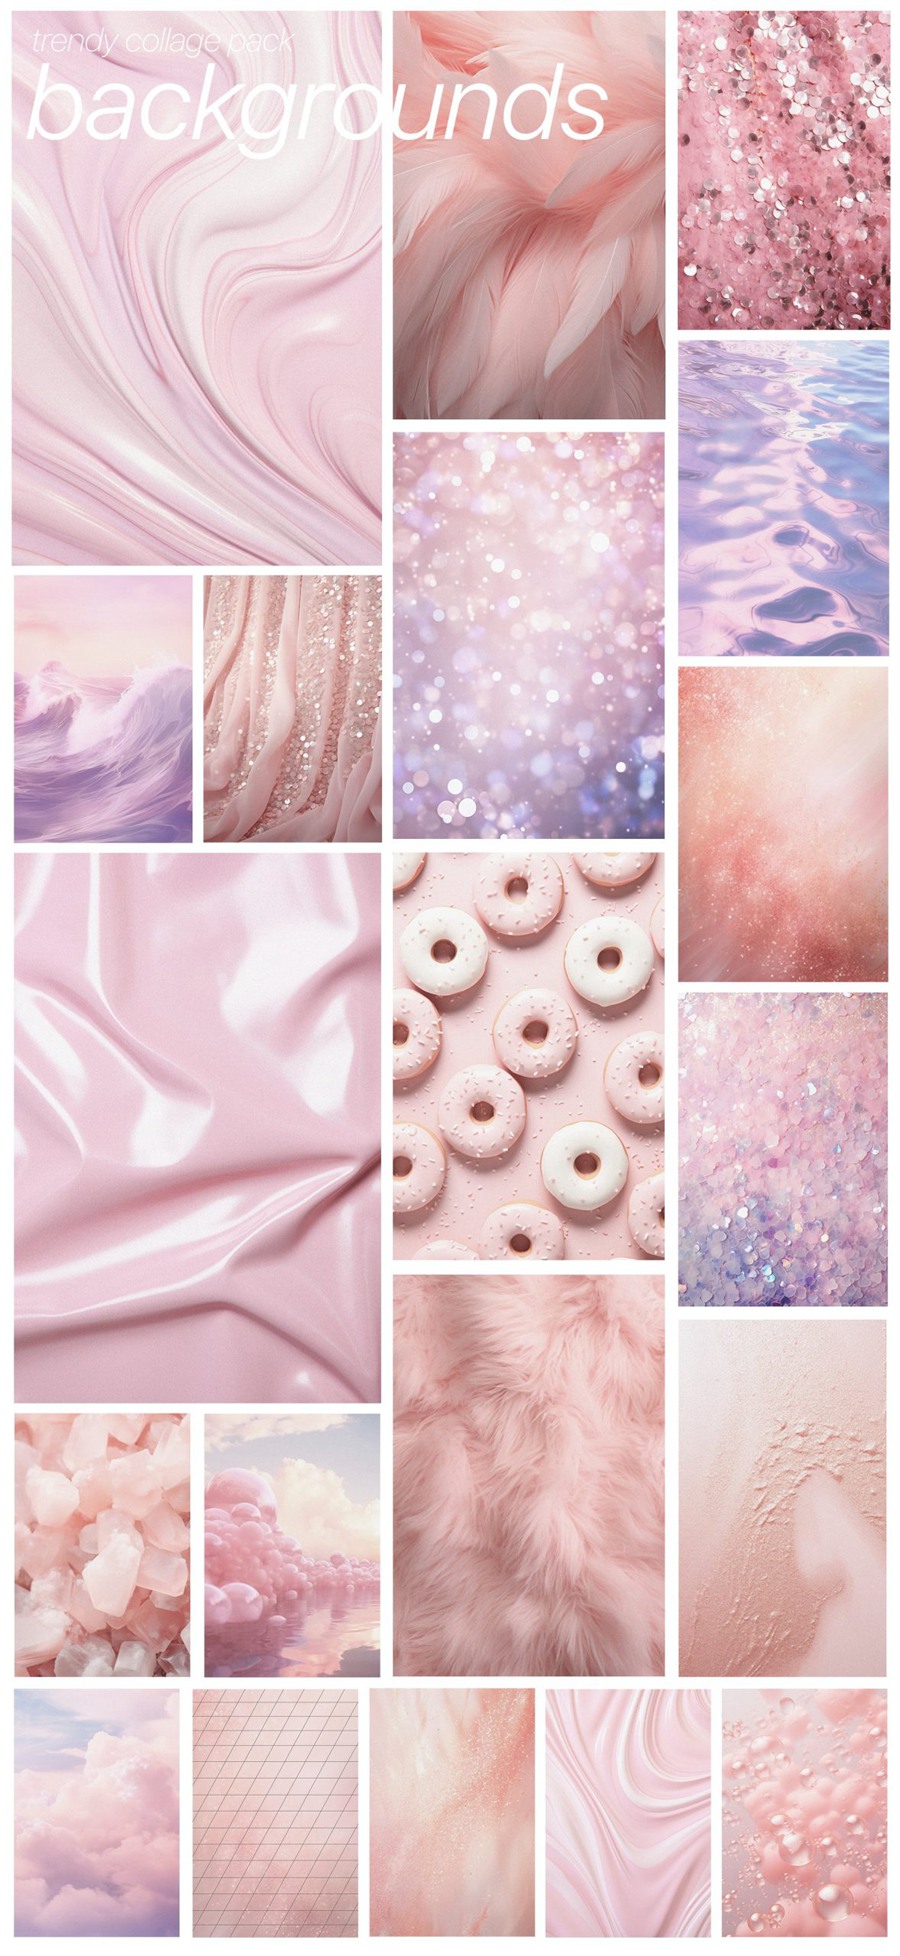 芭比乐园粉色梦幻拼贴艺术海报设计卡片包装品牌图形和背景纹理拼贴包 BARBIELAND pink graphic collage pack 图片素材 第8张